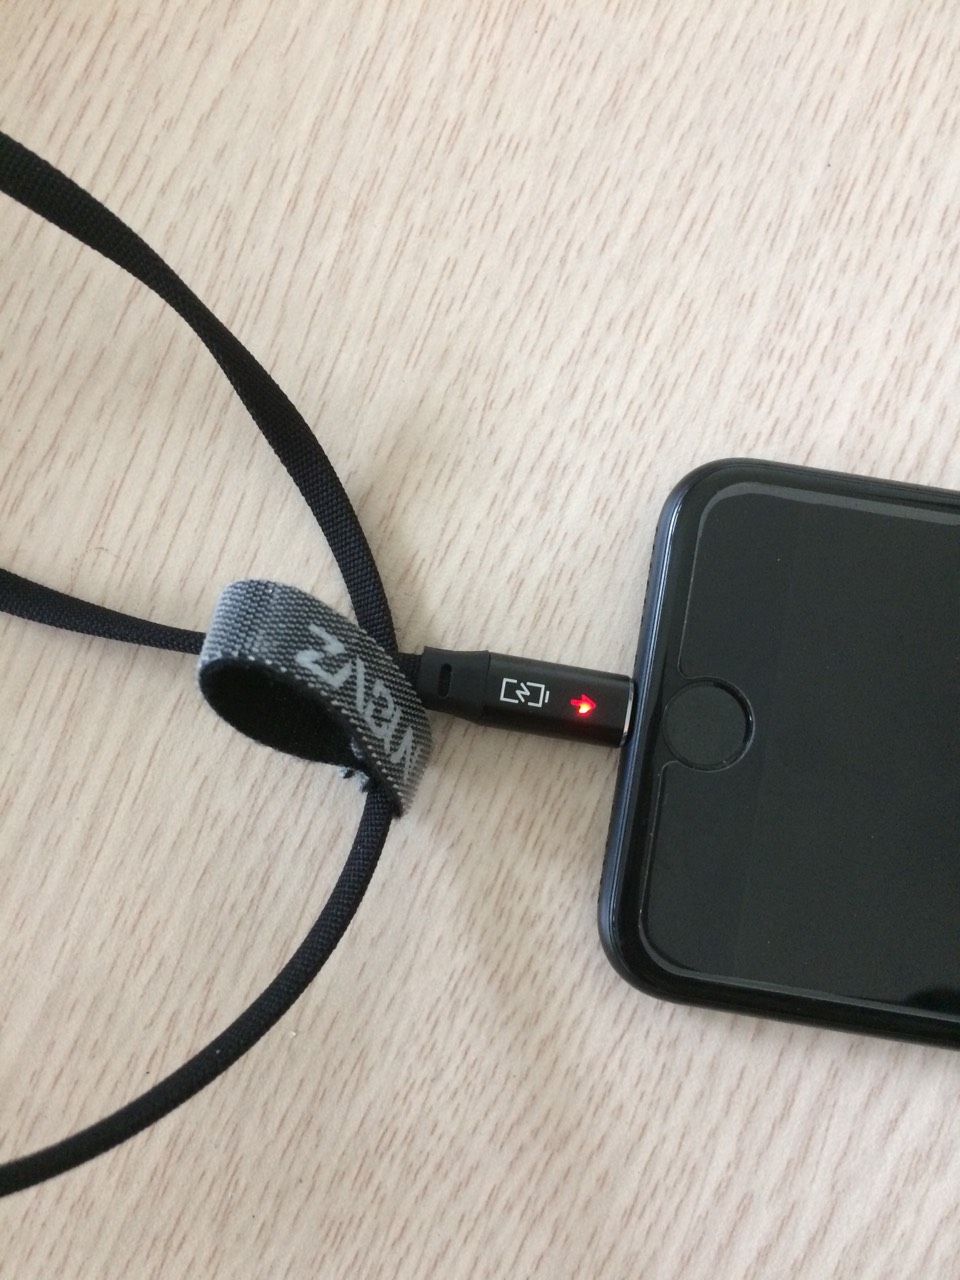 Cáp Sạc Nhanh C02 Zabun siêu bền Lightning -  Đen - Tự ngắt cho iPhone/iPad khi pin đầy Chống Chai Pin - Hàng chính hãng